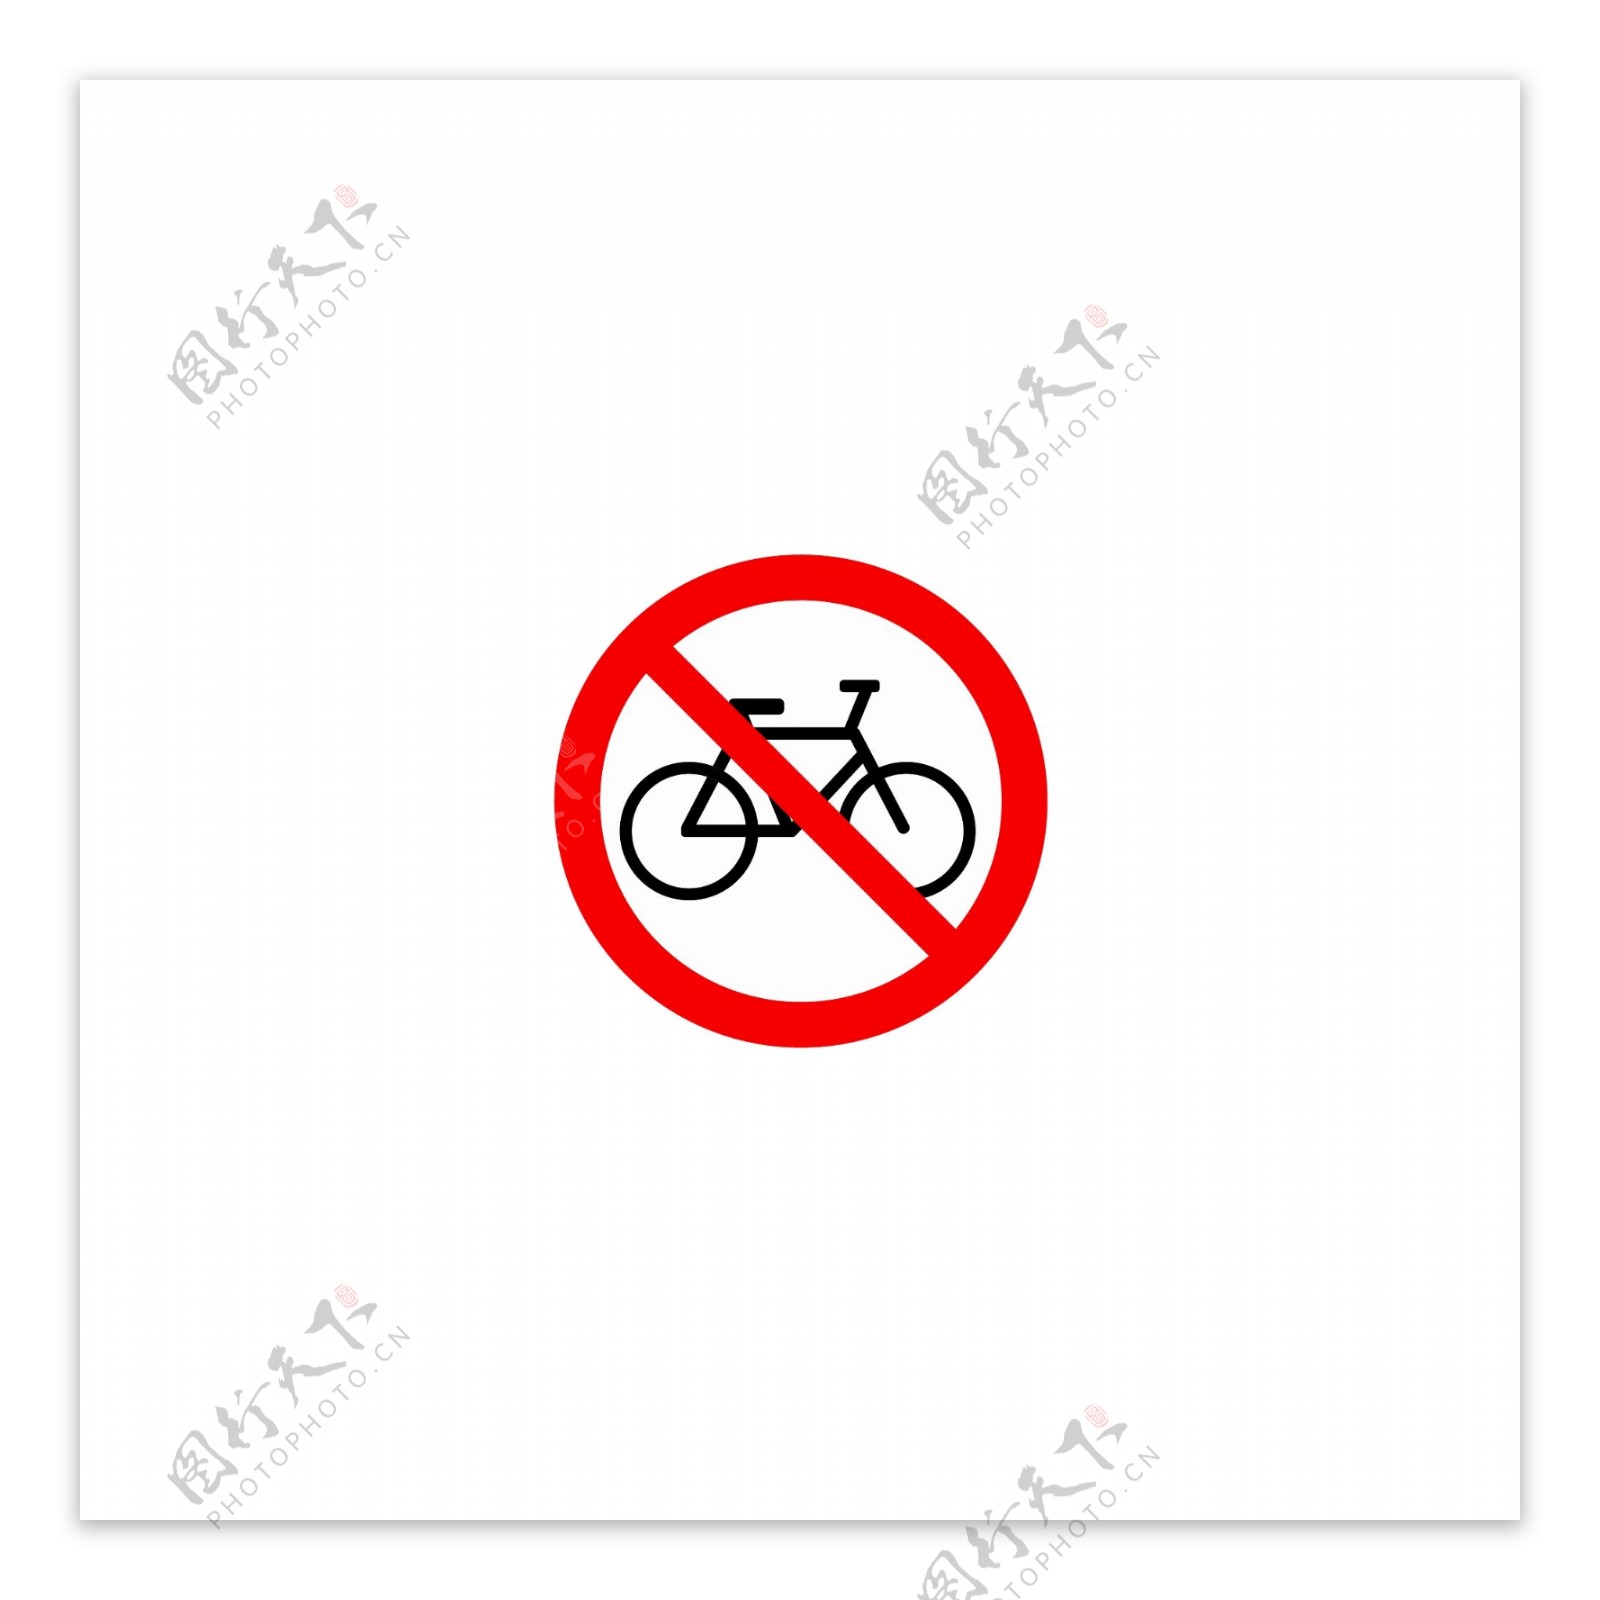 禁止自行车